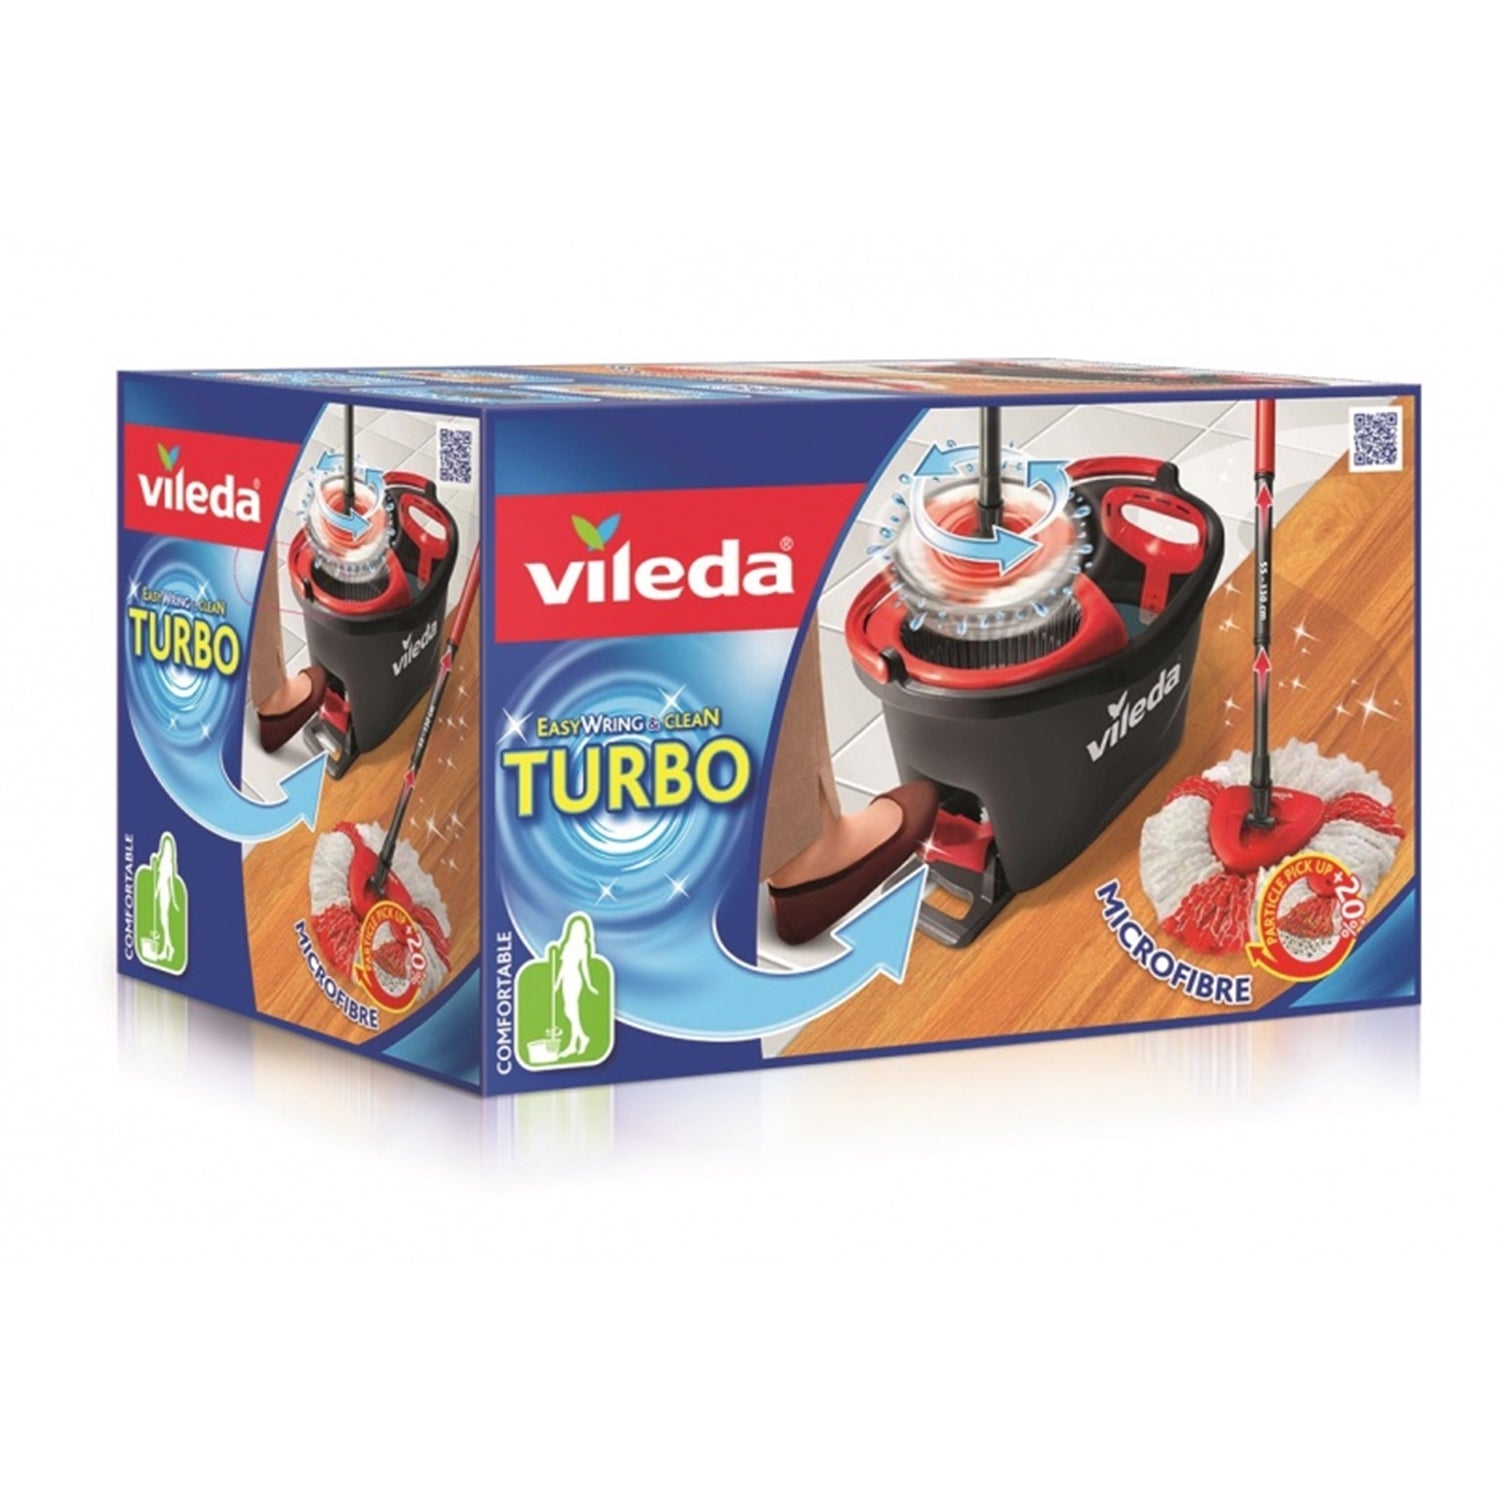 Vileda Easy Wring & Clean Turbo Mop